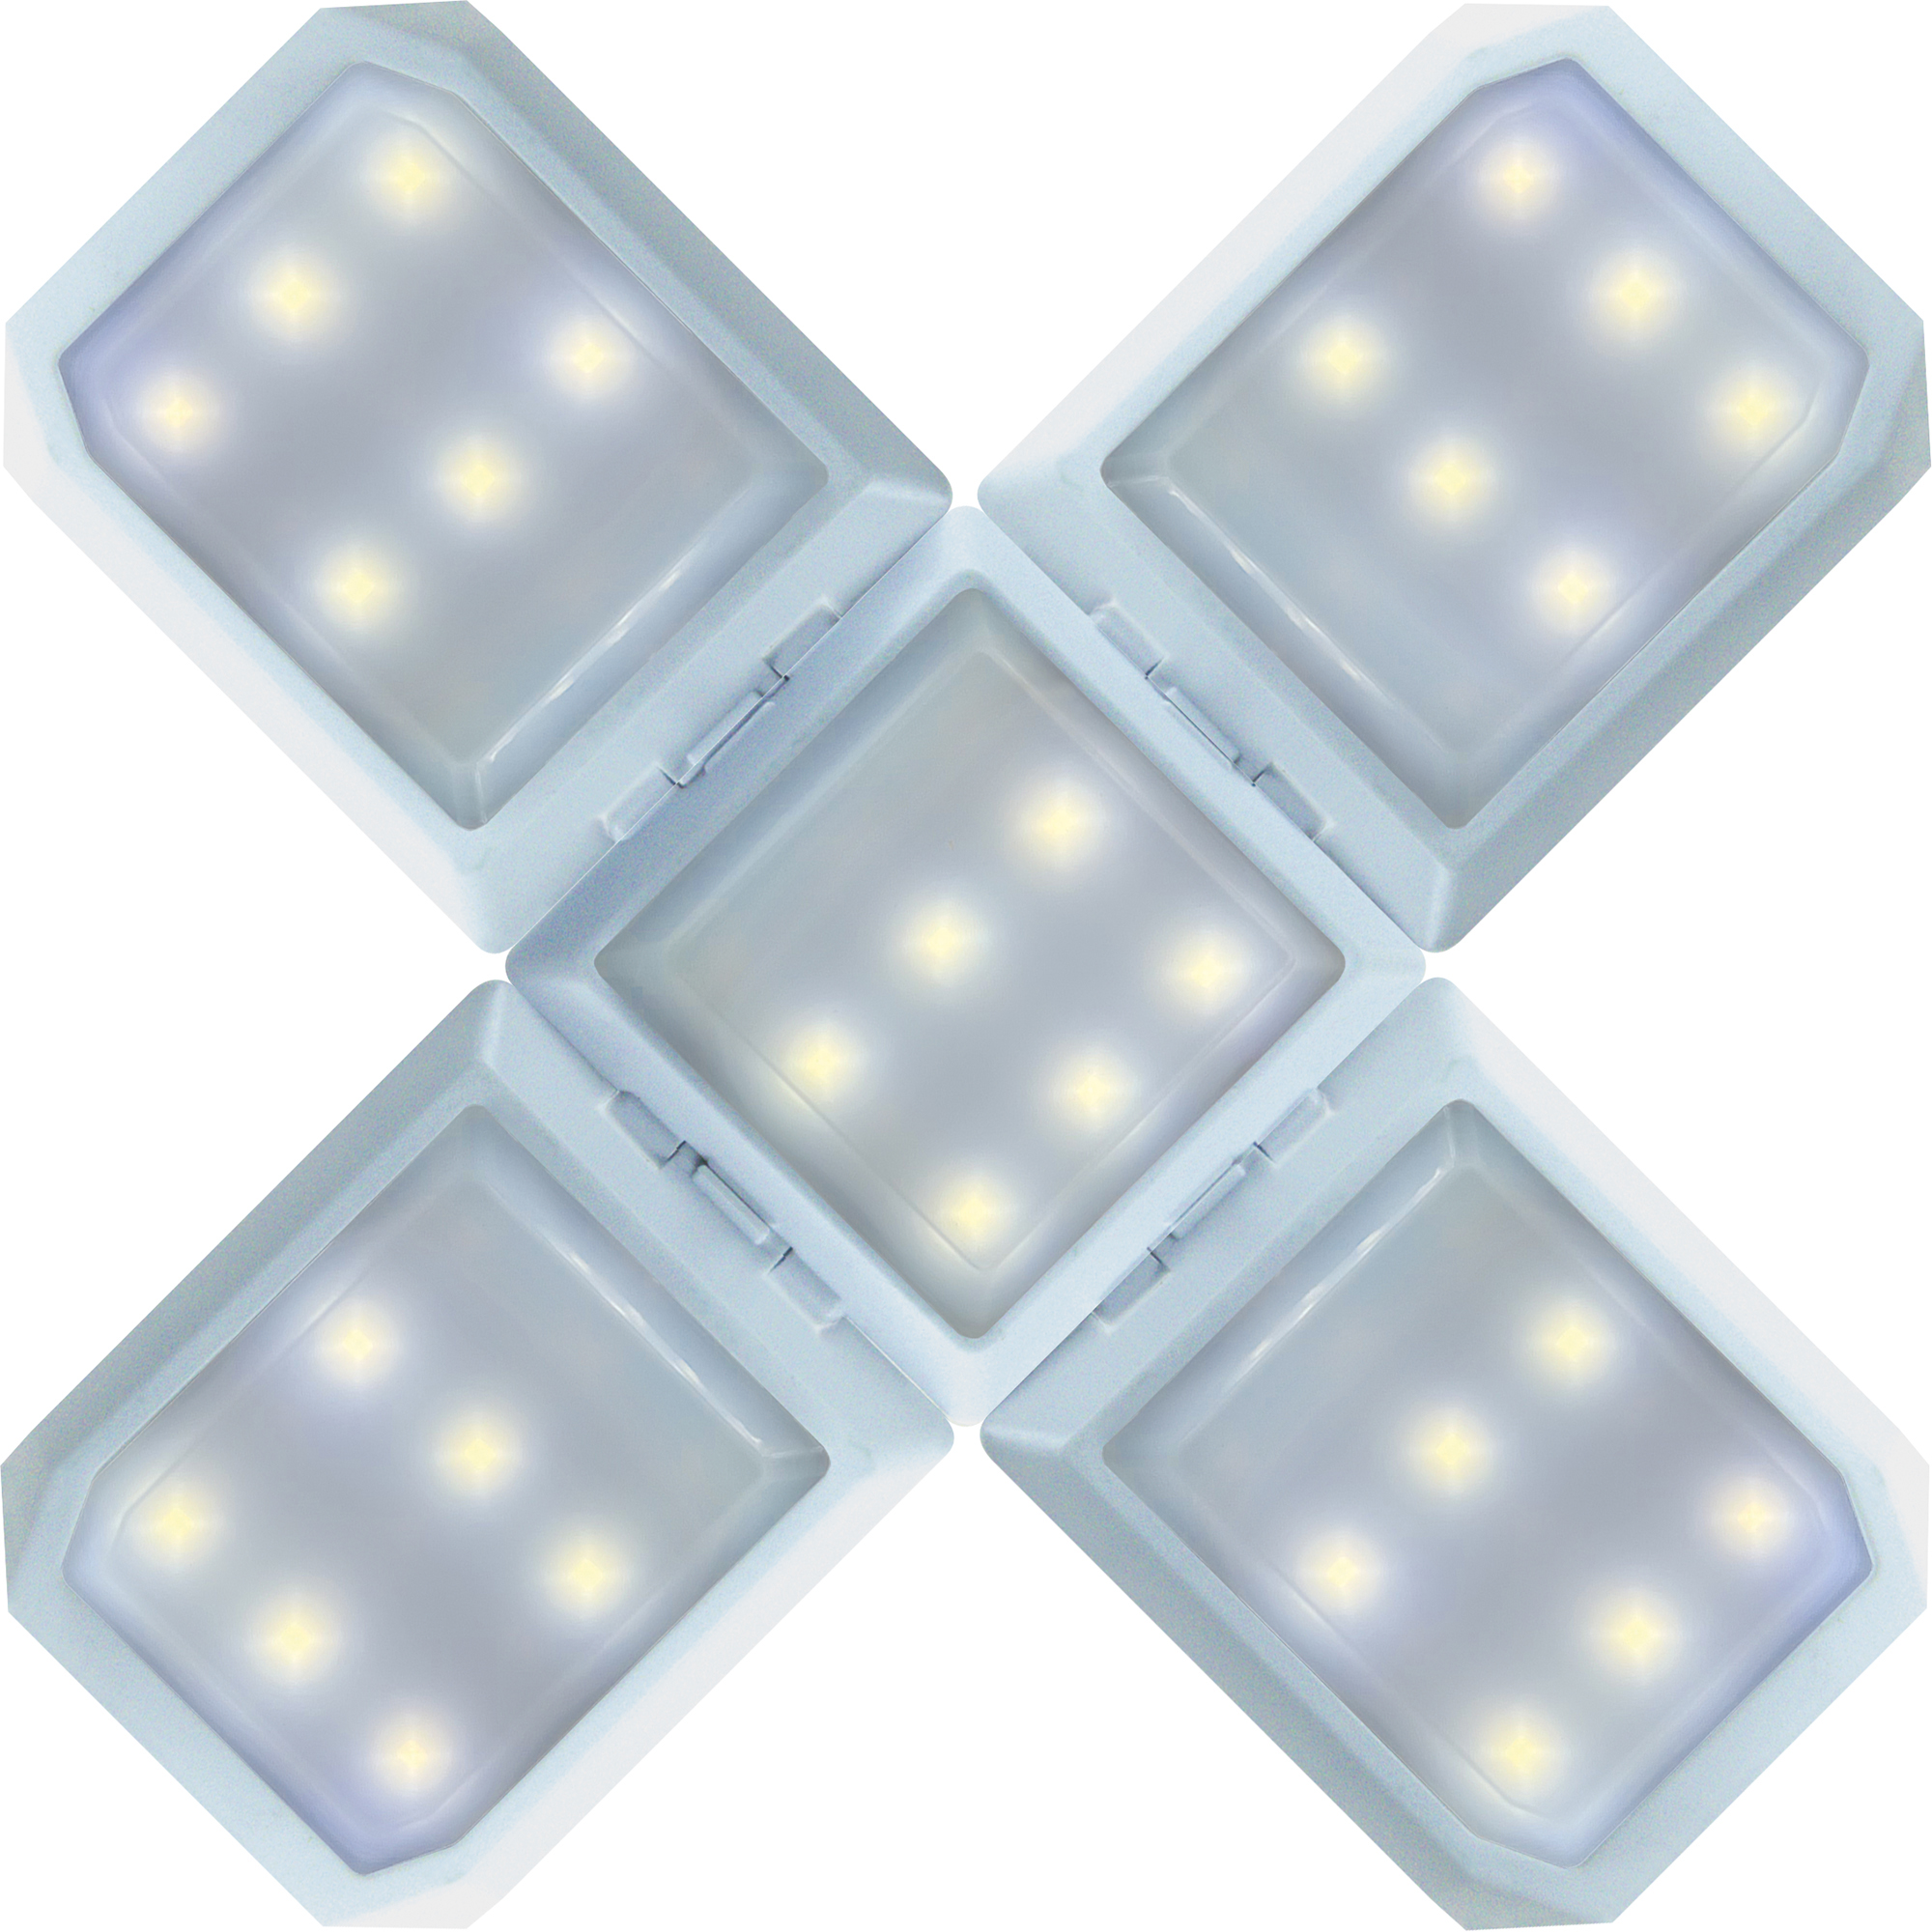 SCHWAIGER -SOLE0520- LED Leuchte kaltweiß, mischlicht warmweiß